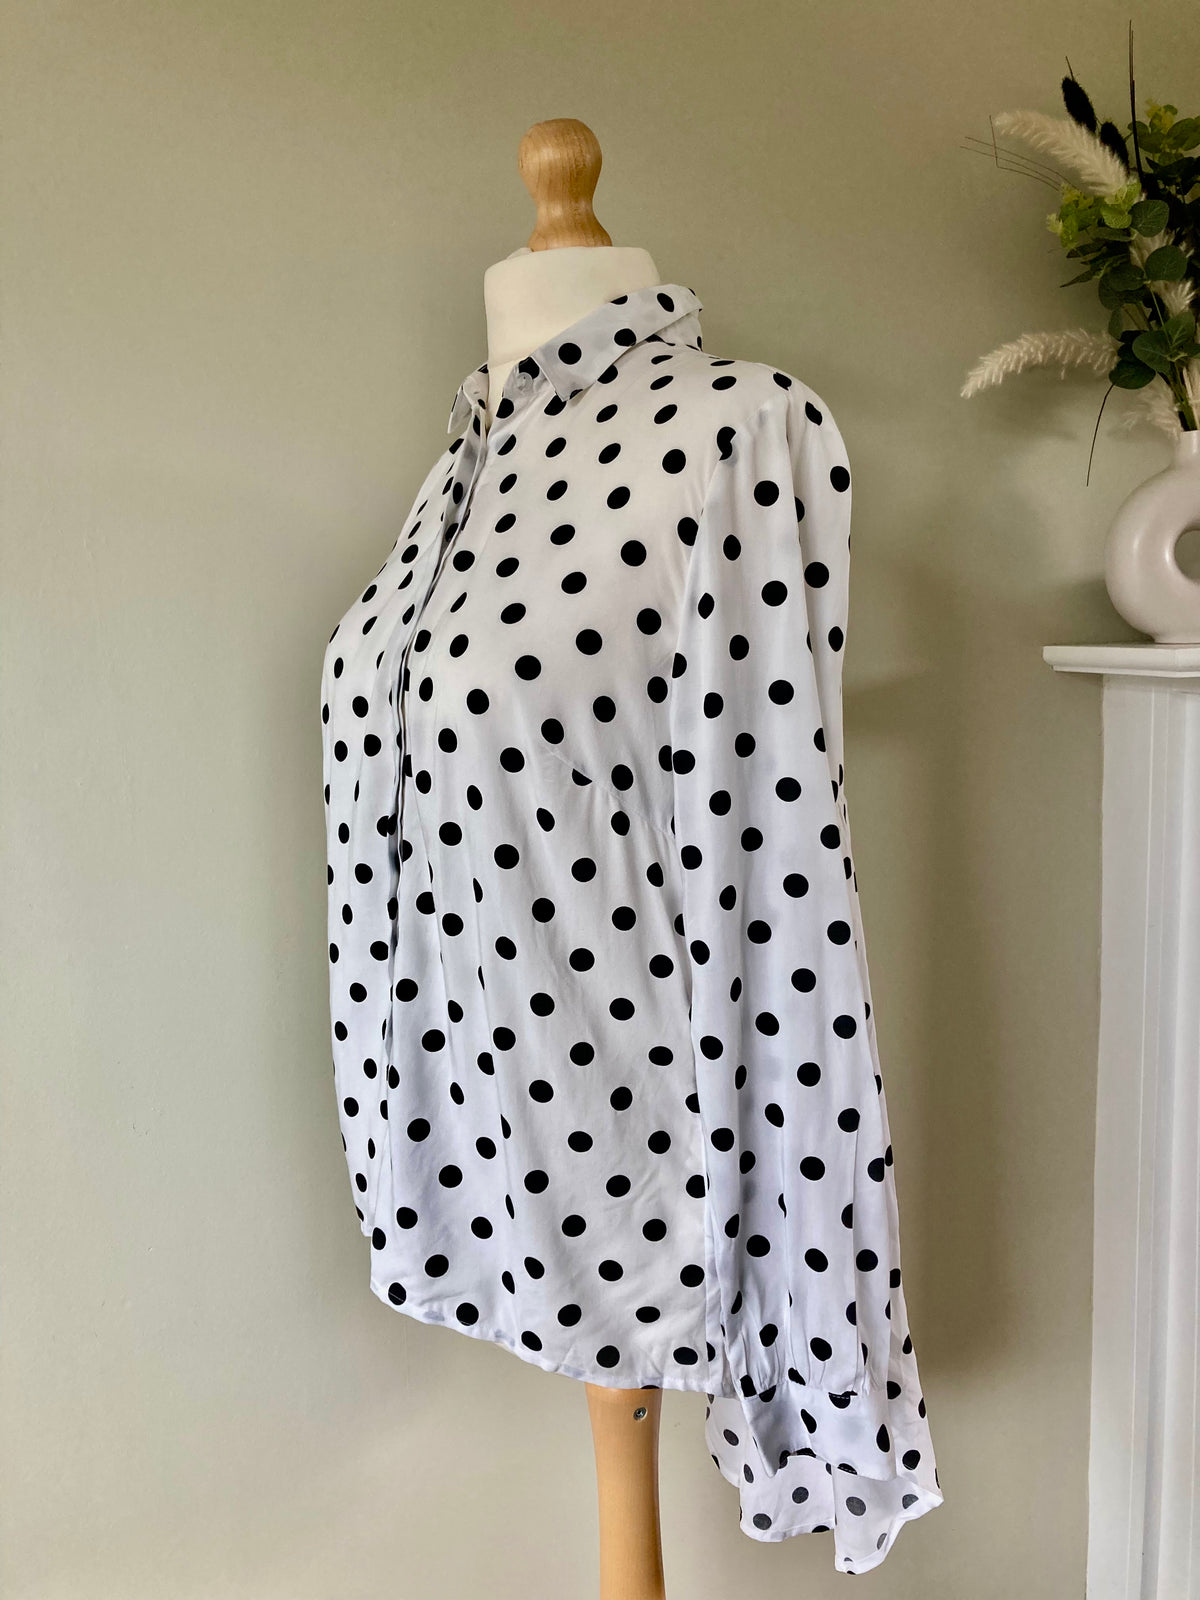 Black & White Polka Dot Shirt by BONPRIX - size 16